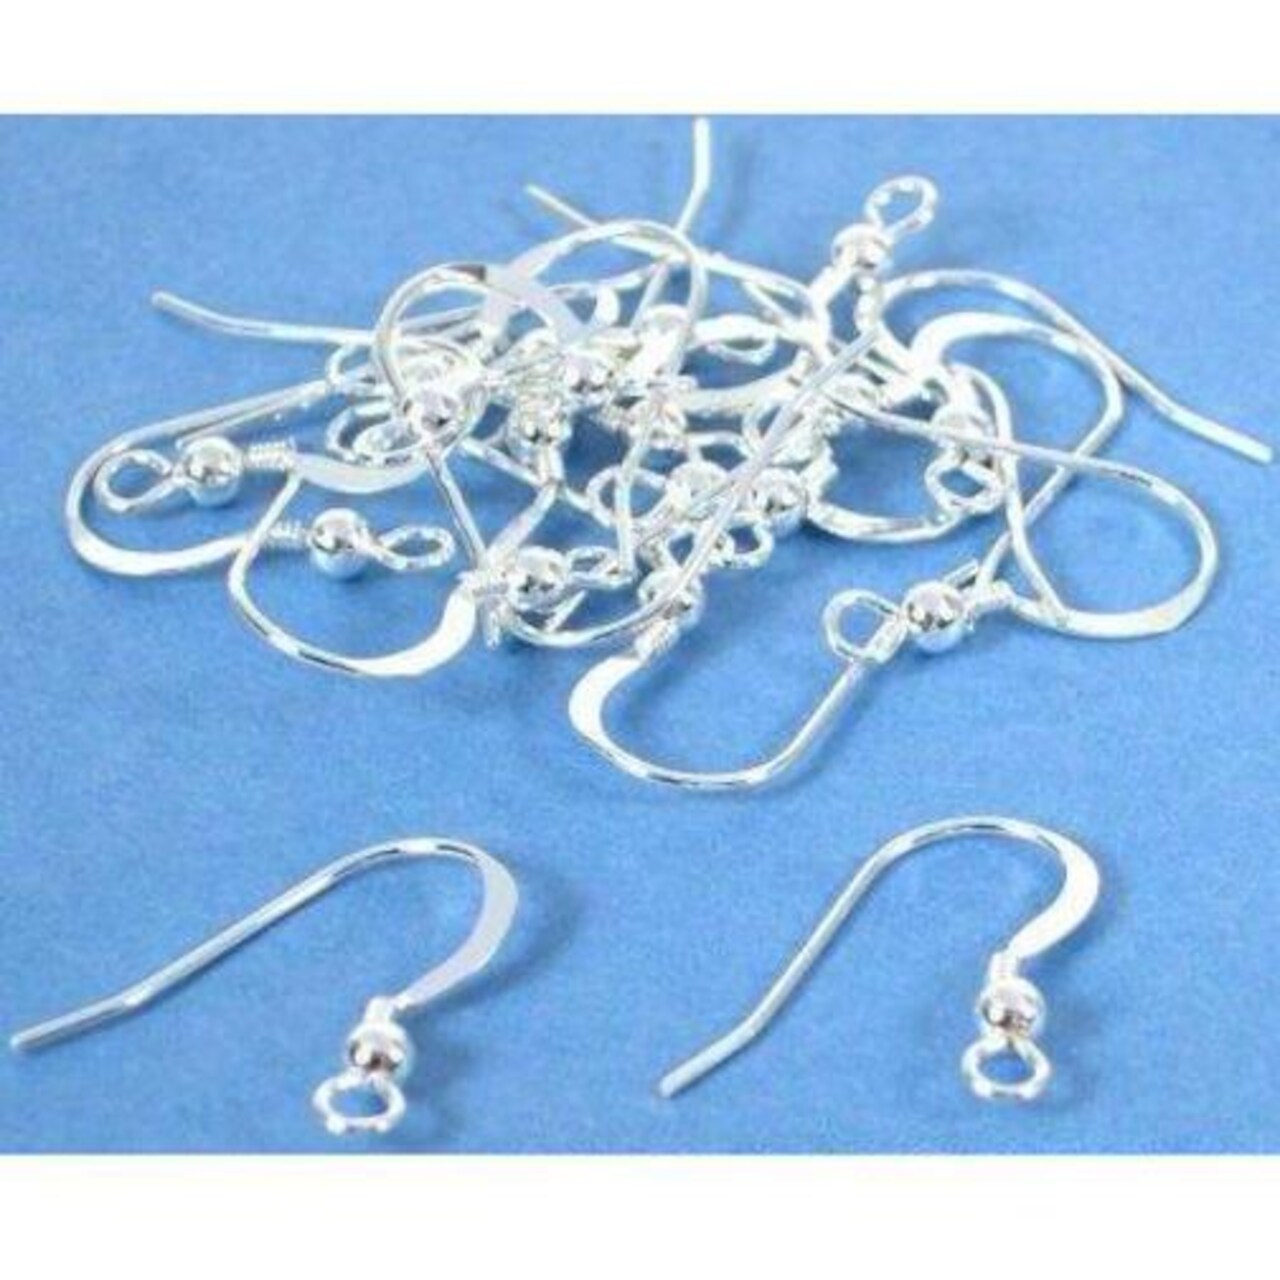 20 Fish Hook Earrings Sterling Silver Earwires 21 Gauge